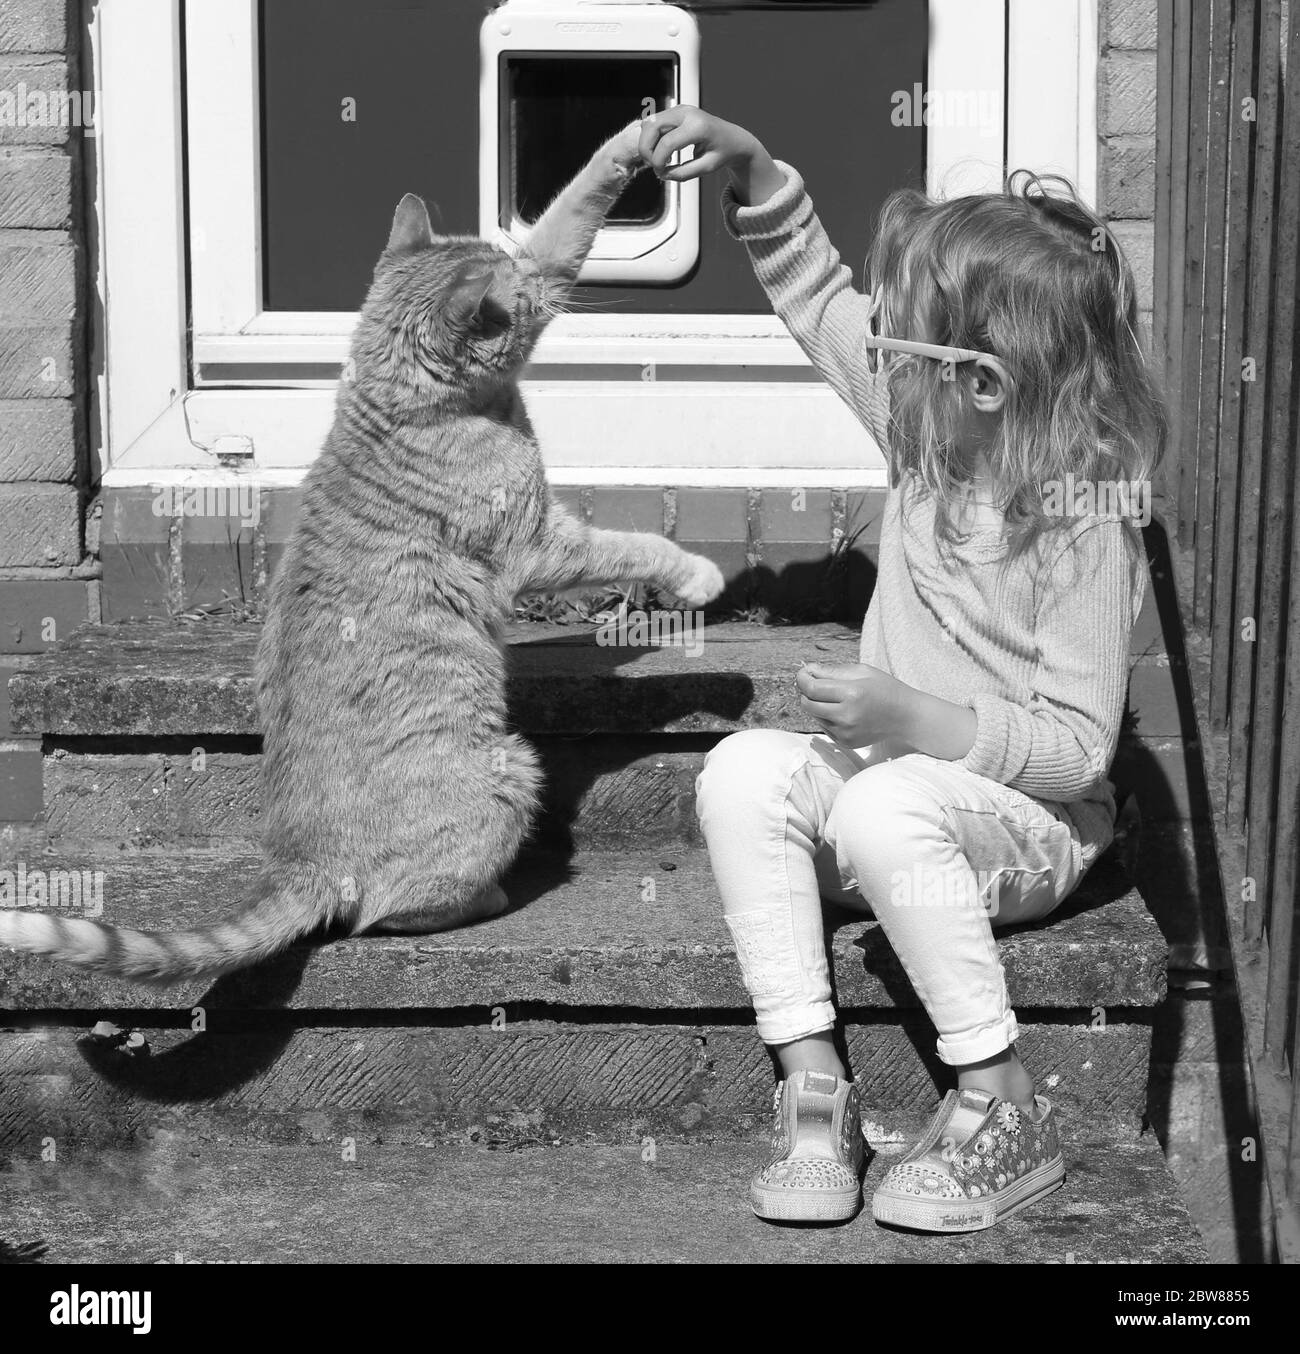 Kleines Kind und Katze spielen vor der Haustür. Schwarz-Weiß Familie Türschwelle Porträt Stockfoto